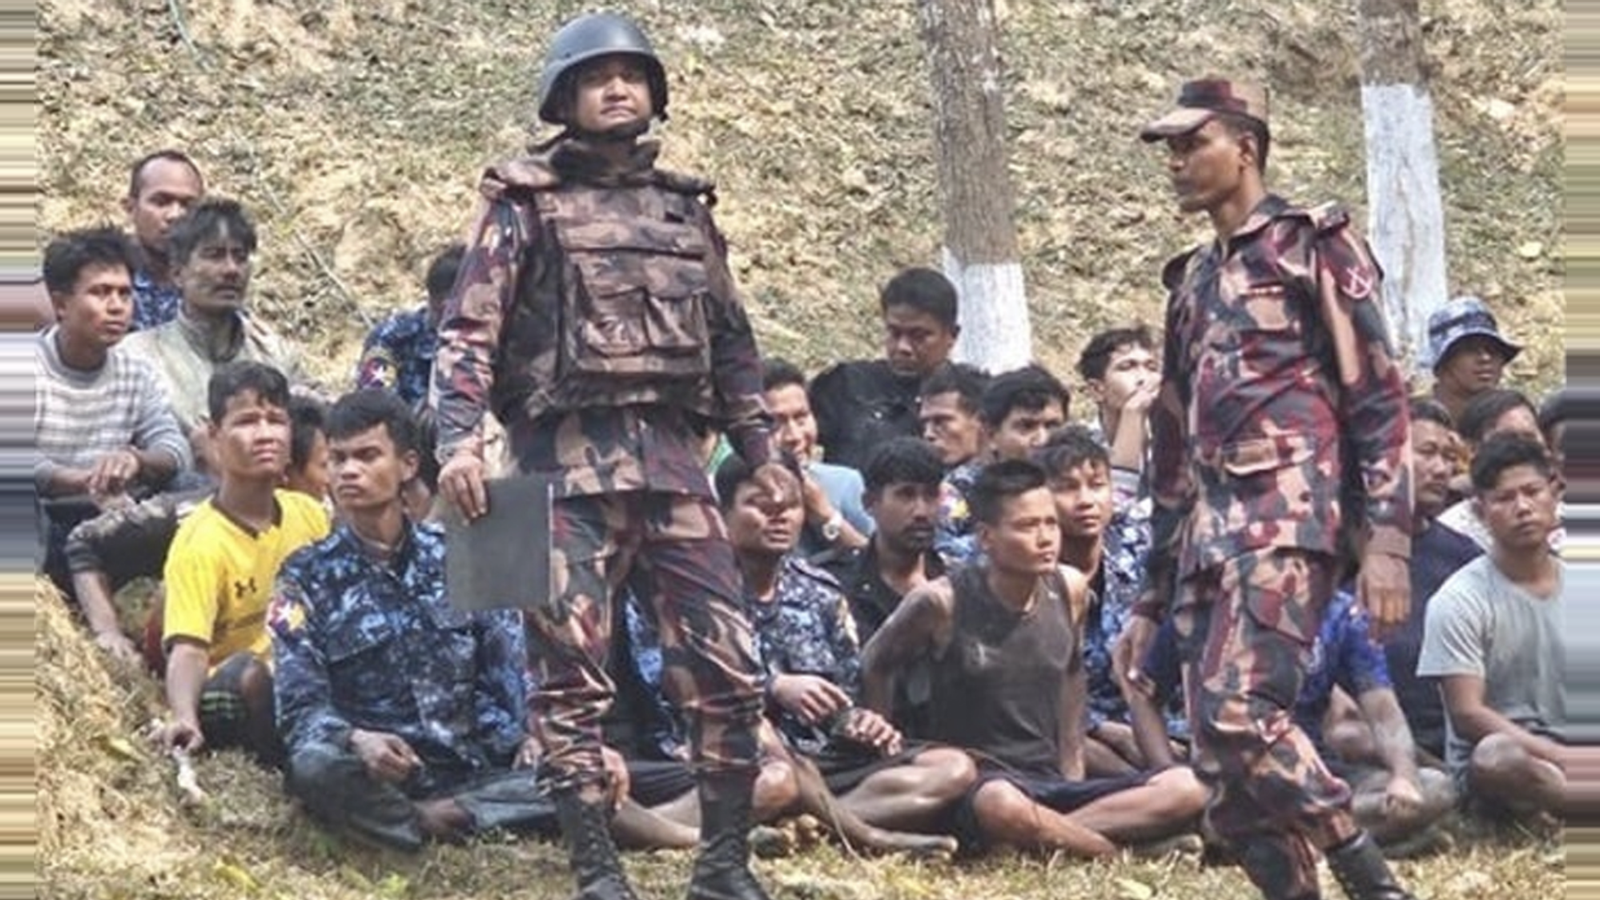 11 more Myanmar border guard members take refuge in Bangladesh